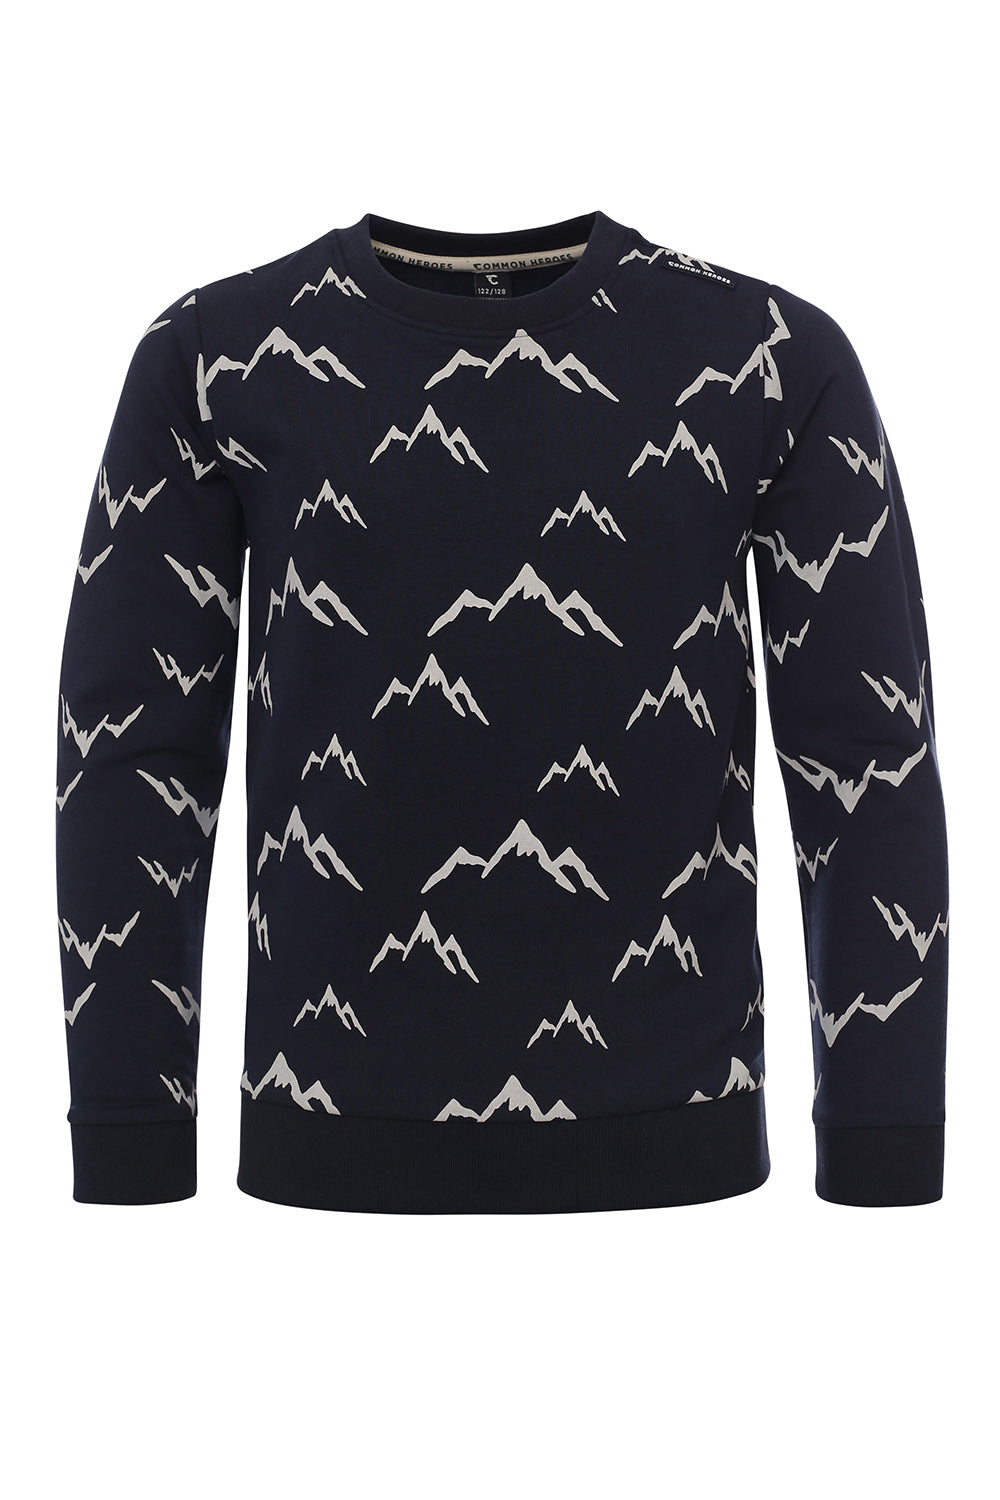 || Common Heroes || Sweater met bergen print